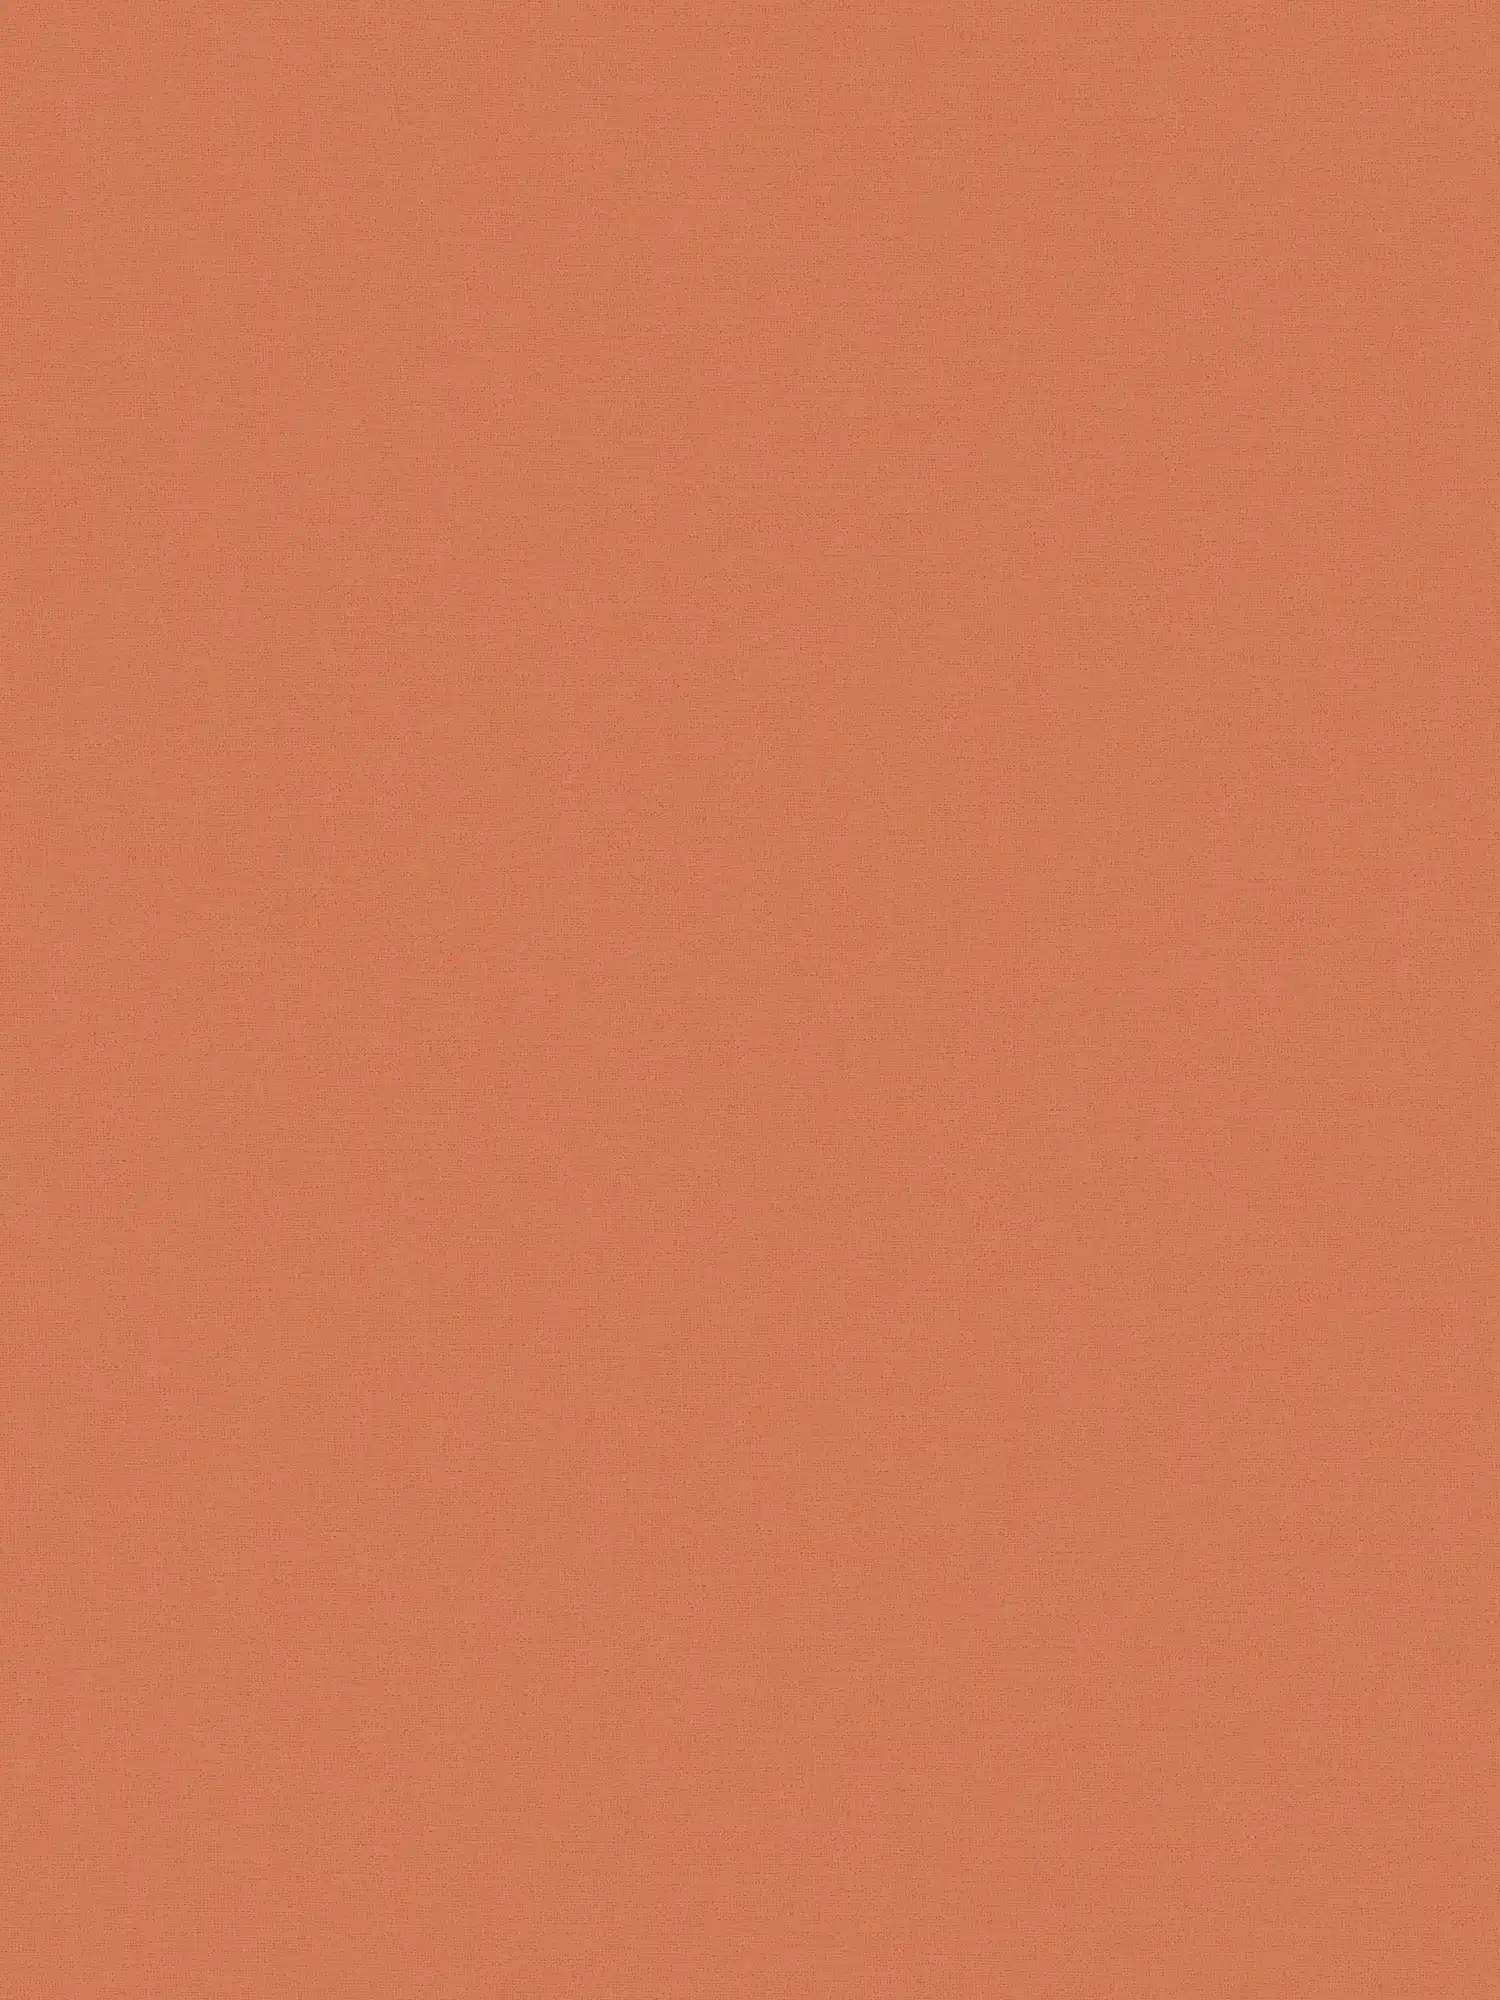 Papel pintado de unidad naranja, liso y mate de MICHALSKY
